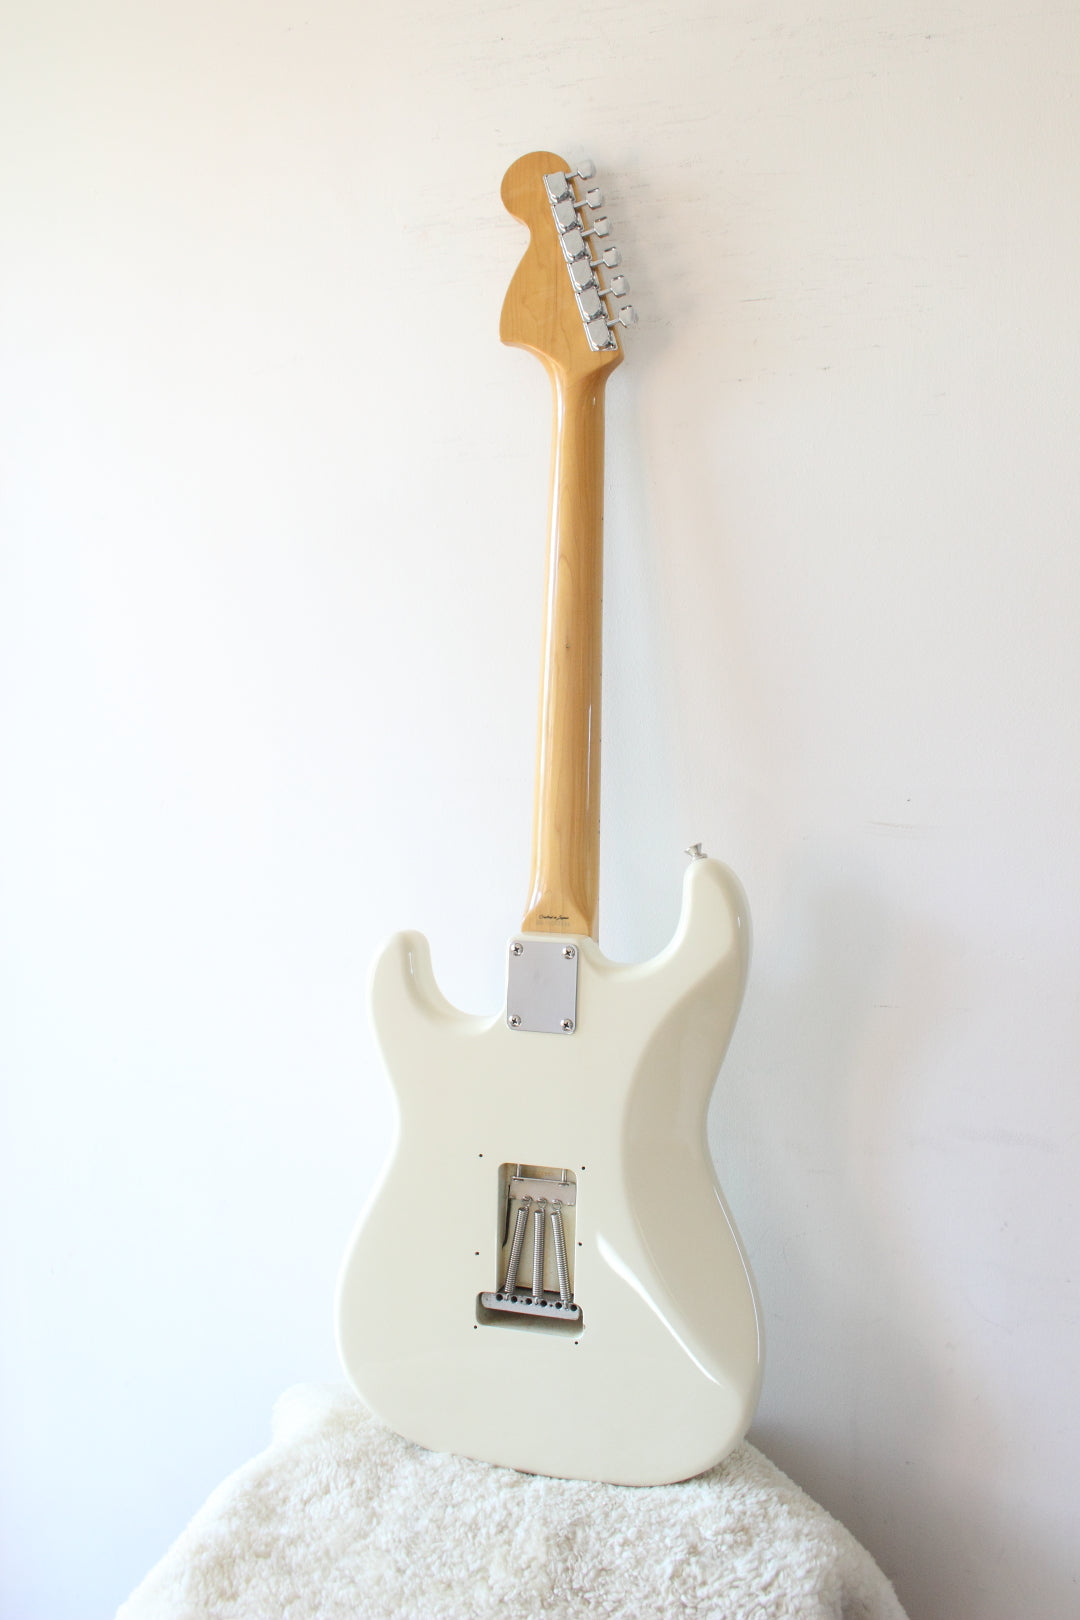 Fender '68 Reissue Stratocaster ST68-85TX Vintage White 1997-00